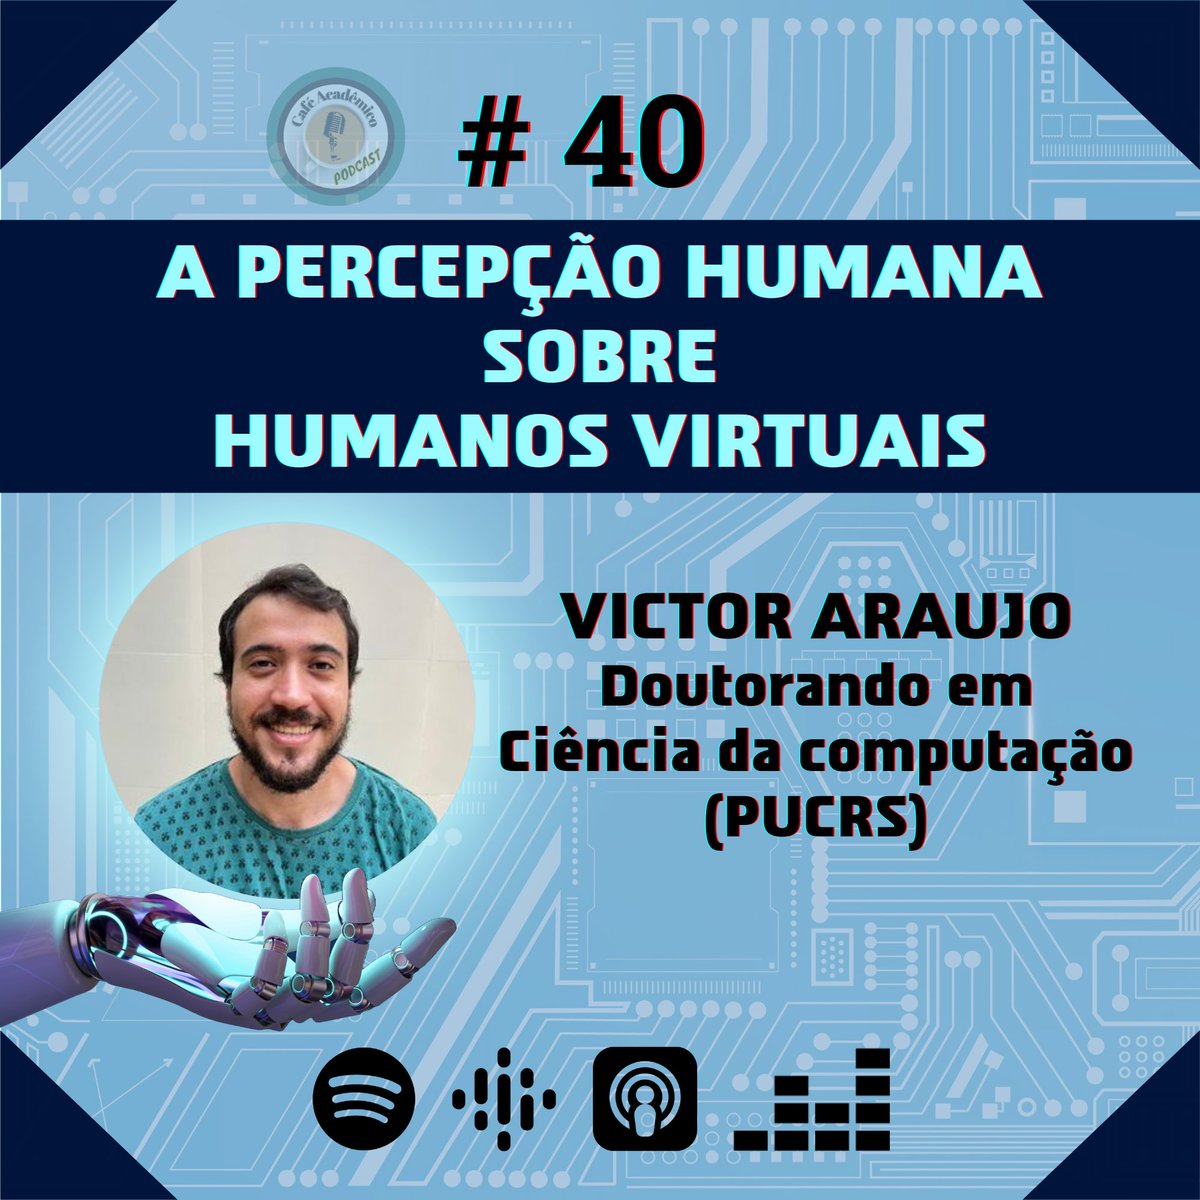 Victor Araujo, Doutorando em Ciência da Computação (PUCRS), fala sobre como percebemos e reagimos em relação a seres virtuais e robóticos.
OUÇA O EPISÓDIO COMPLETO NAS PLATAFORMAS DIGITAIS
#robô #robot #valedaestranheza #assistentevirtual #alexa